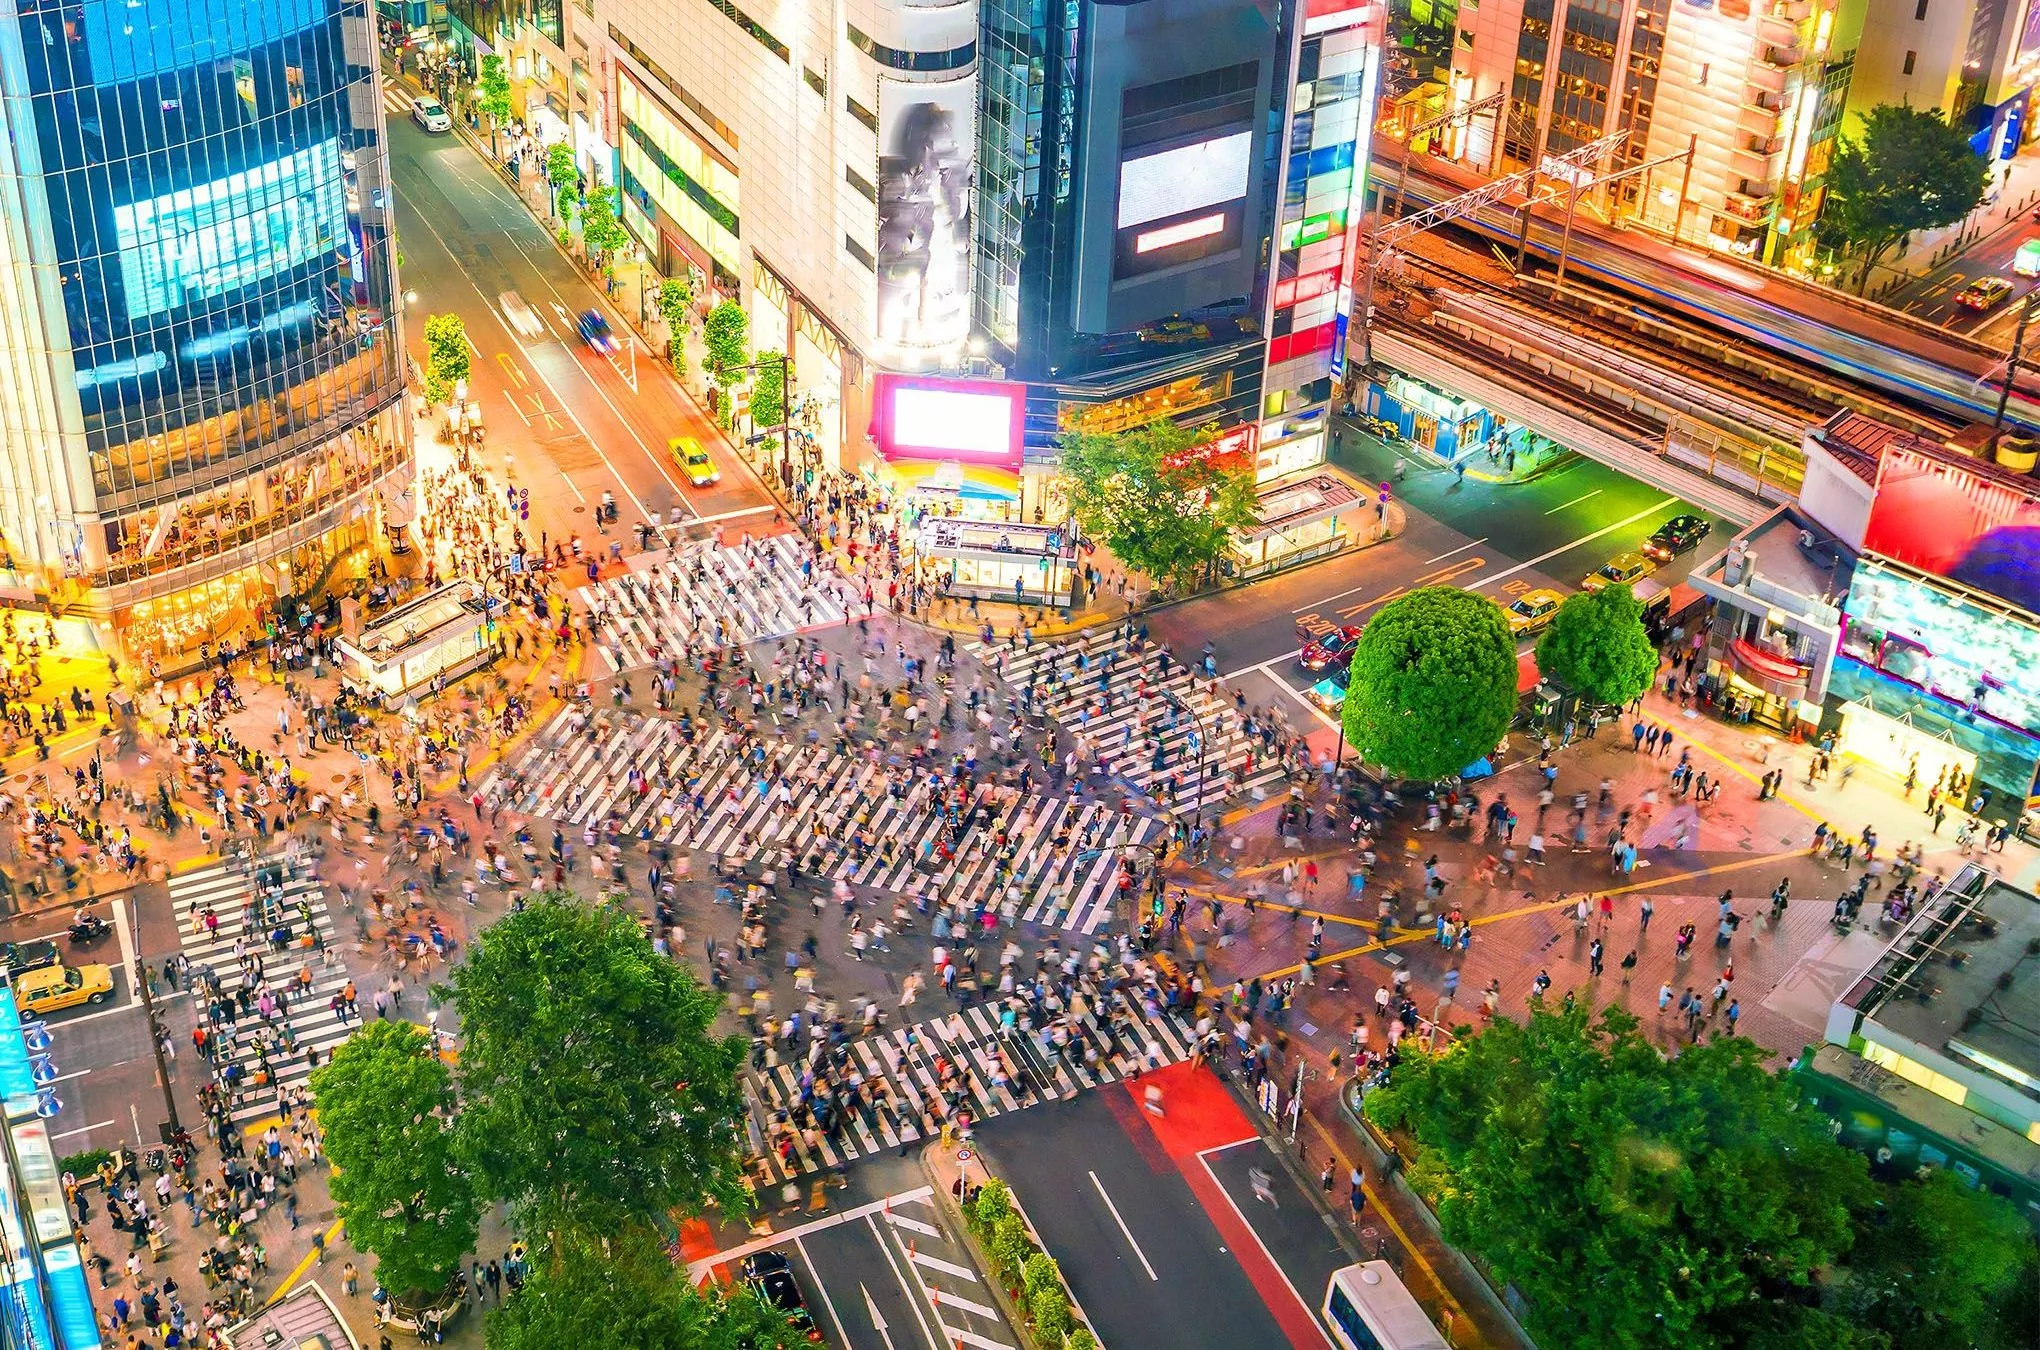 Bis zu 15.000 Menschen überqueren die Shibuya-Kreuzung während einer einzigen Ampelphase